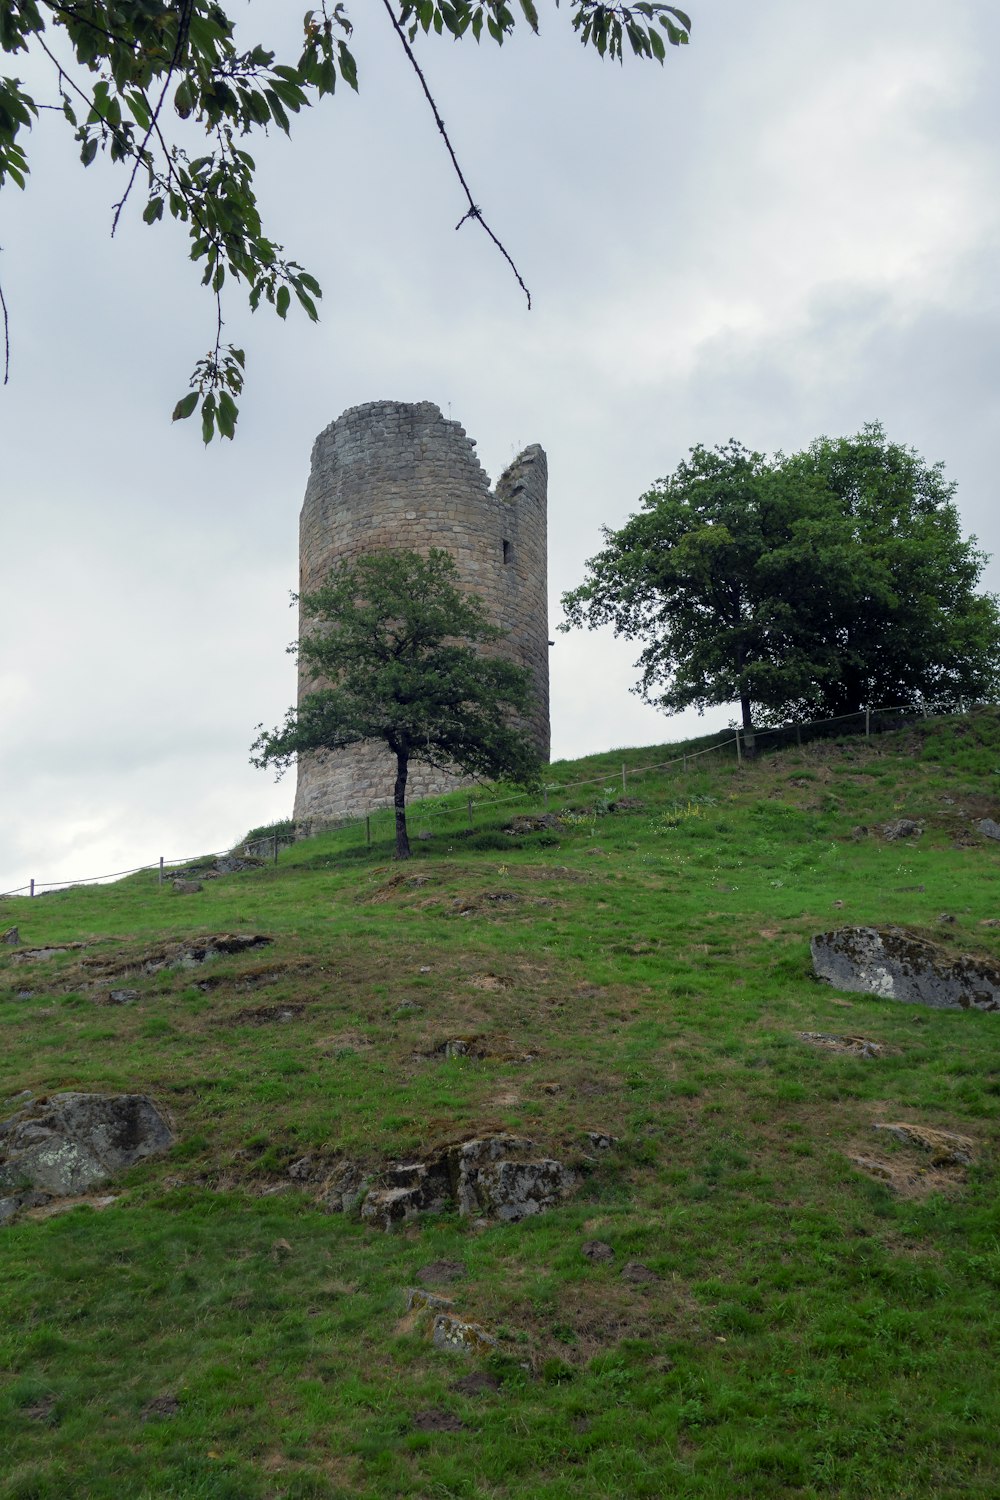 une tour de pierre située au sommet d’une colline verdoyante